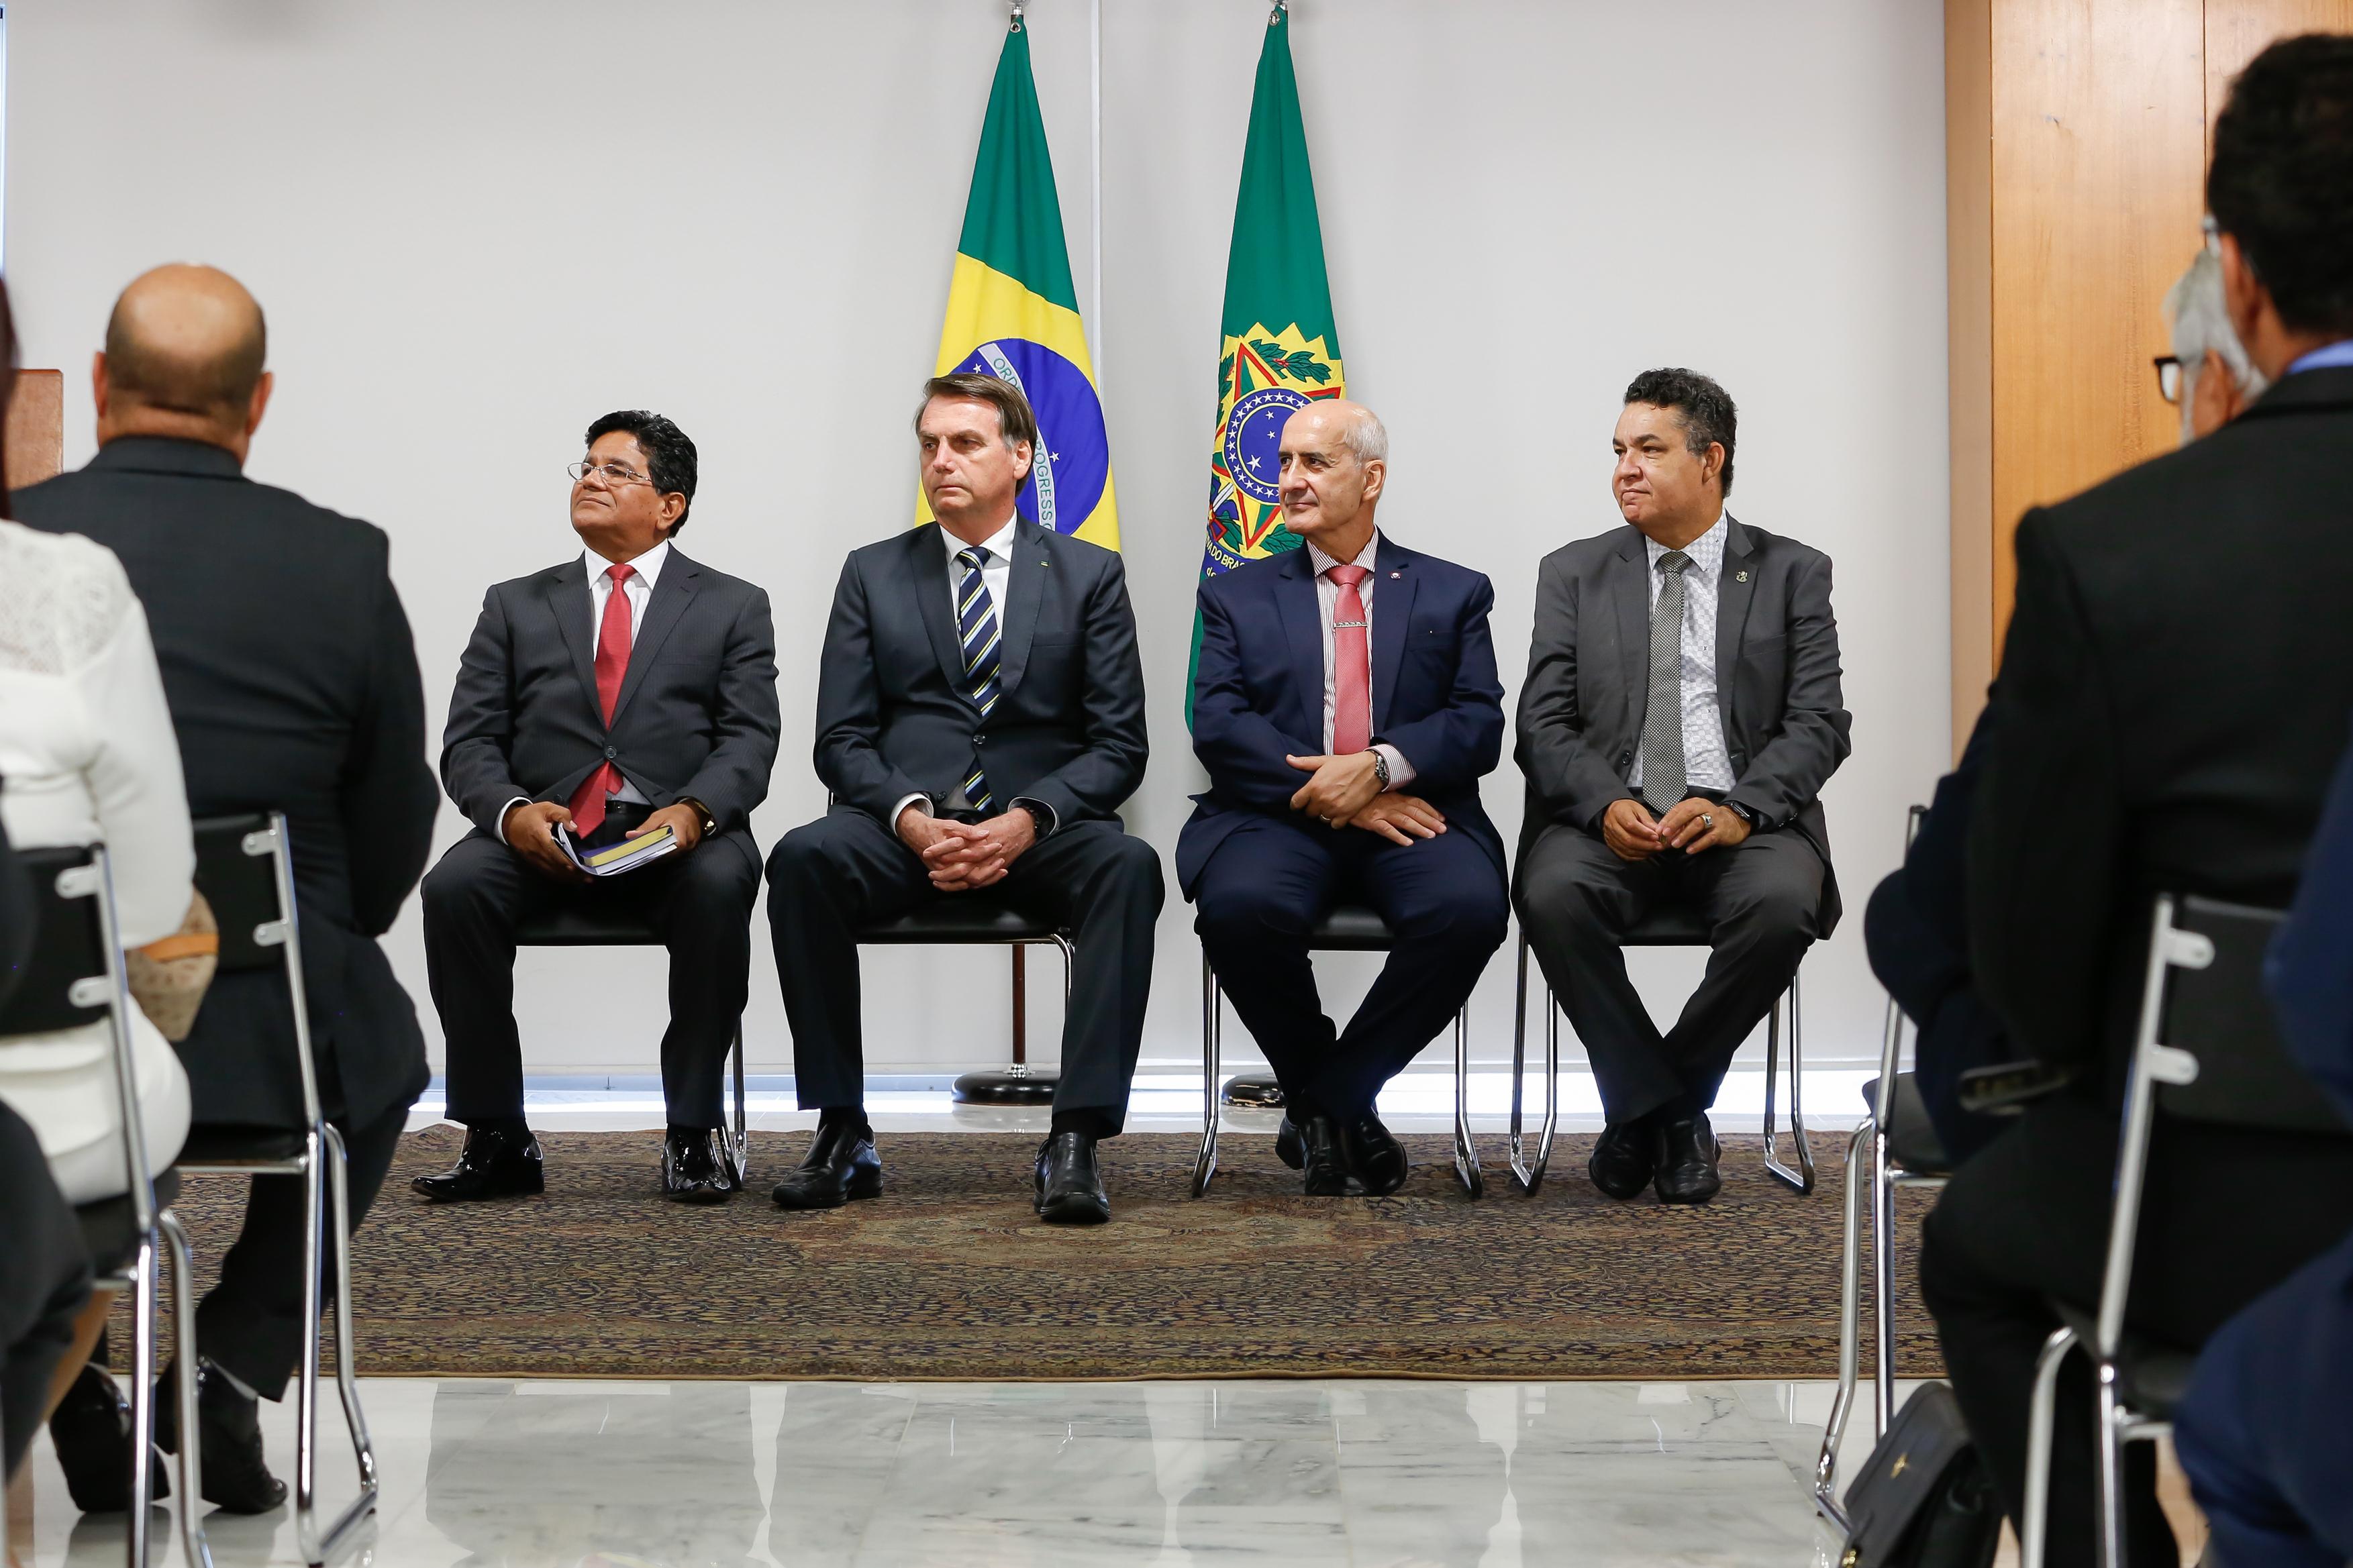 O presidente Jair Bolsonaro durante encontro com os pastores Gilmar do Santos (à esquerda) e Arilton Moura (à direita) no Palácio do Planalto em 2019.